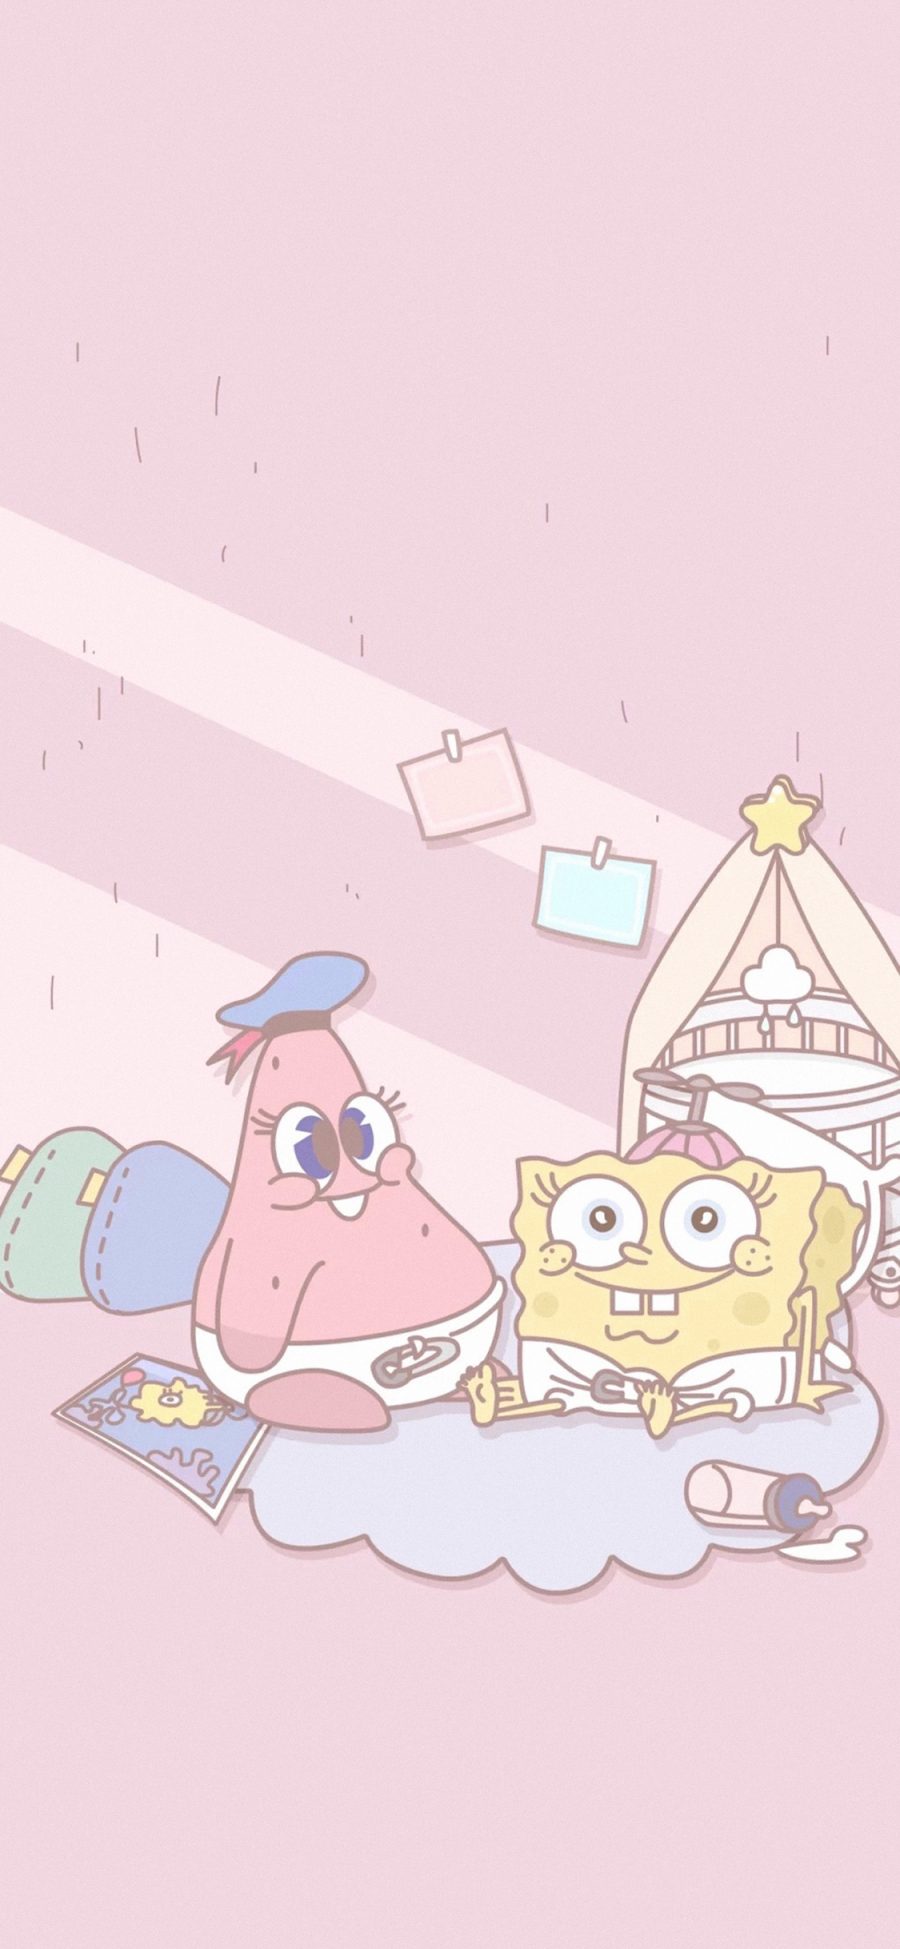 [2436×1125]海绵宝宝 粉色 卡通 可爱 派大星 苹果手机动漫壁纸图片